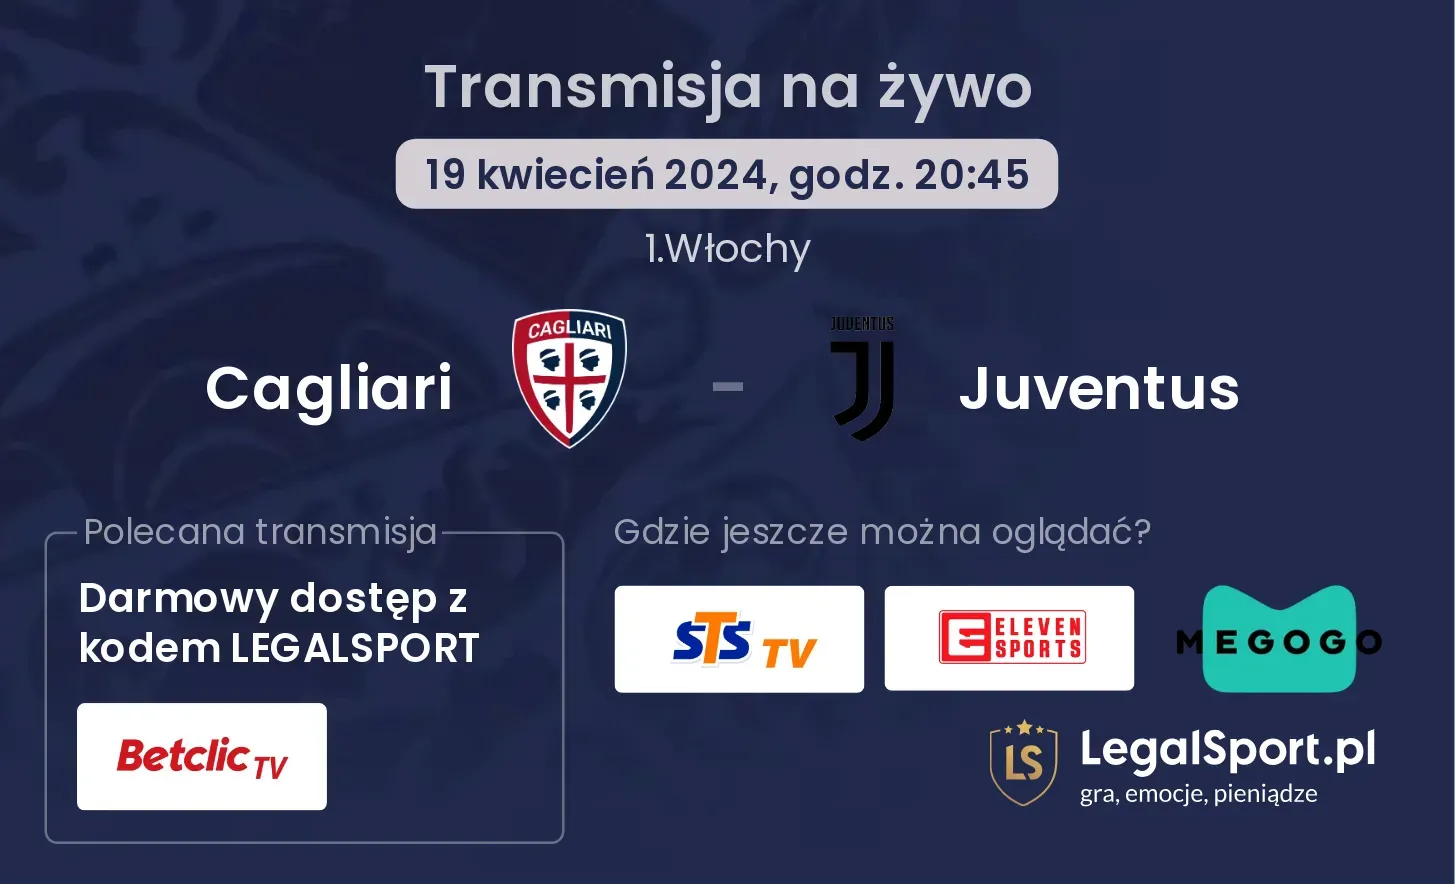 Cagliari - Juventus transmisja na żywo